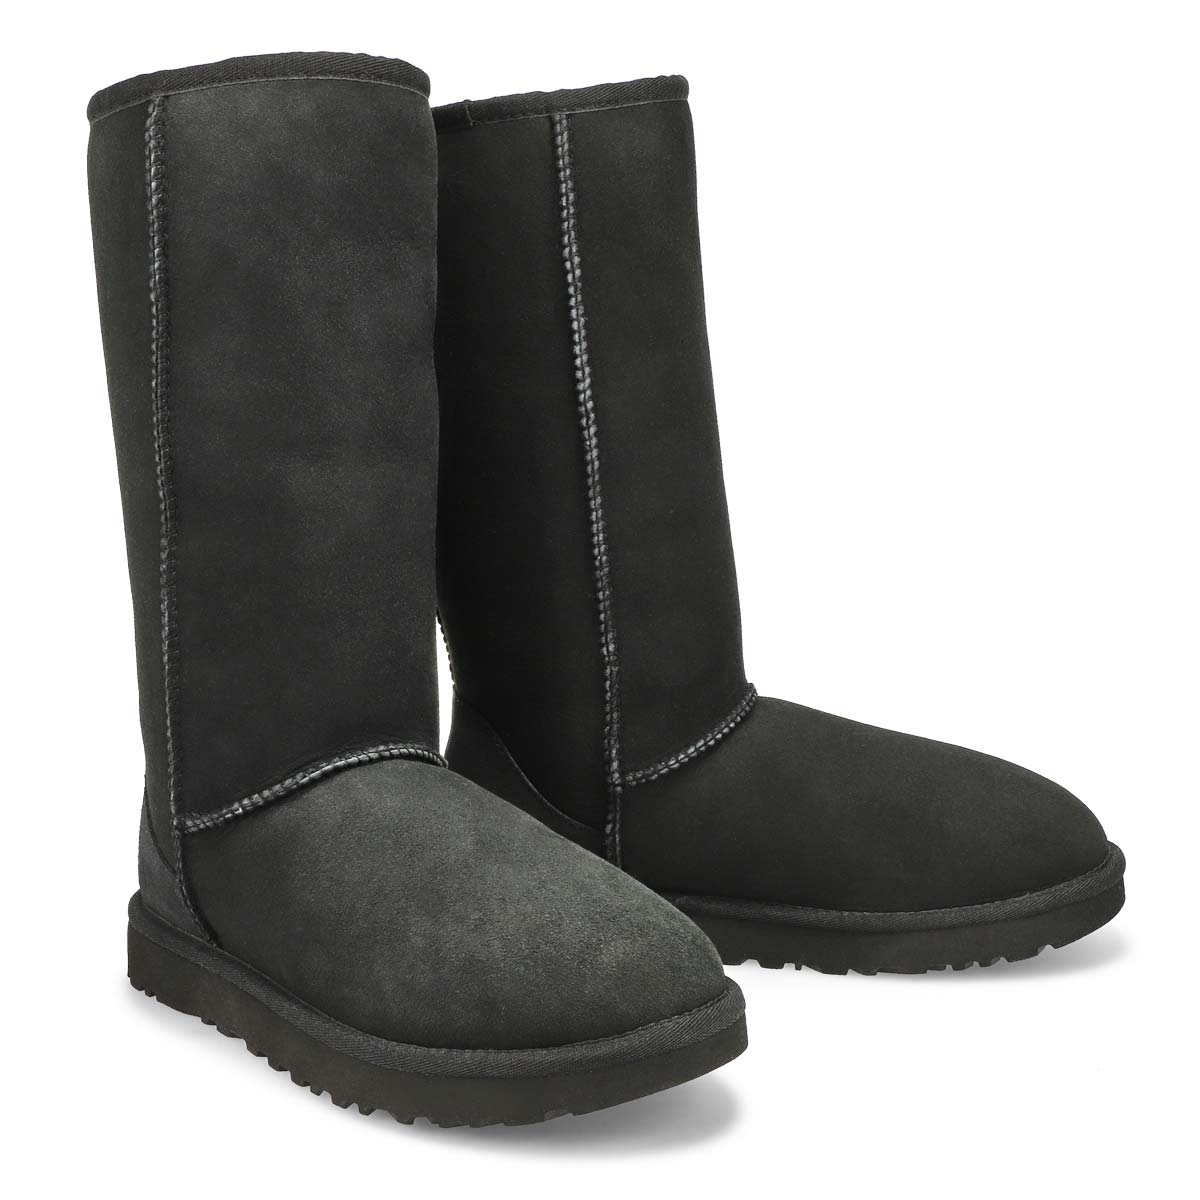 Women's CLASSIC TALL II black sheepskin boots